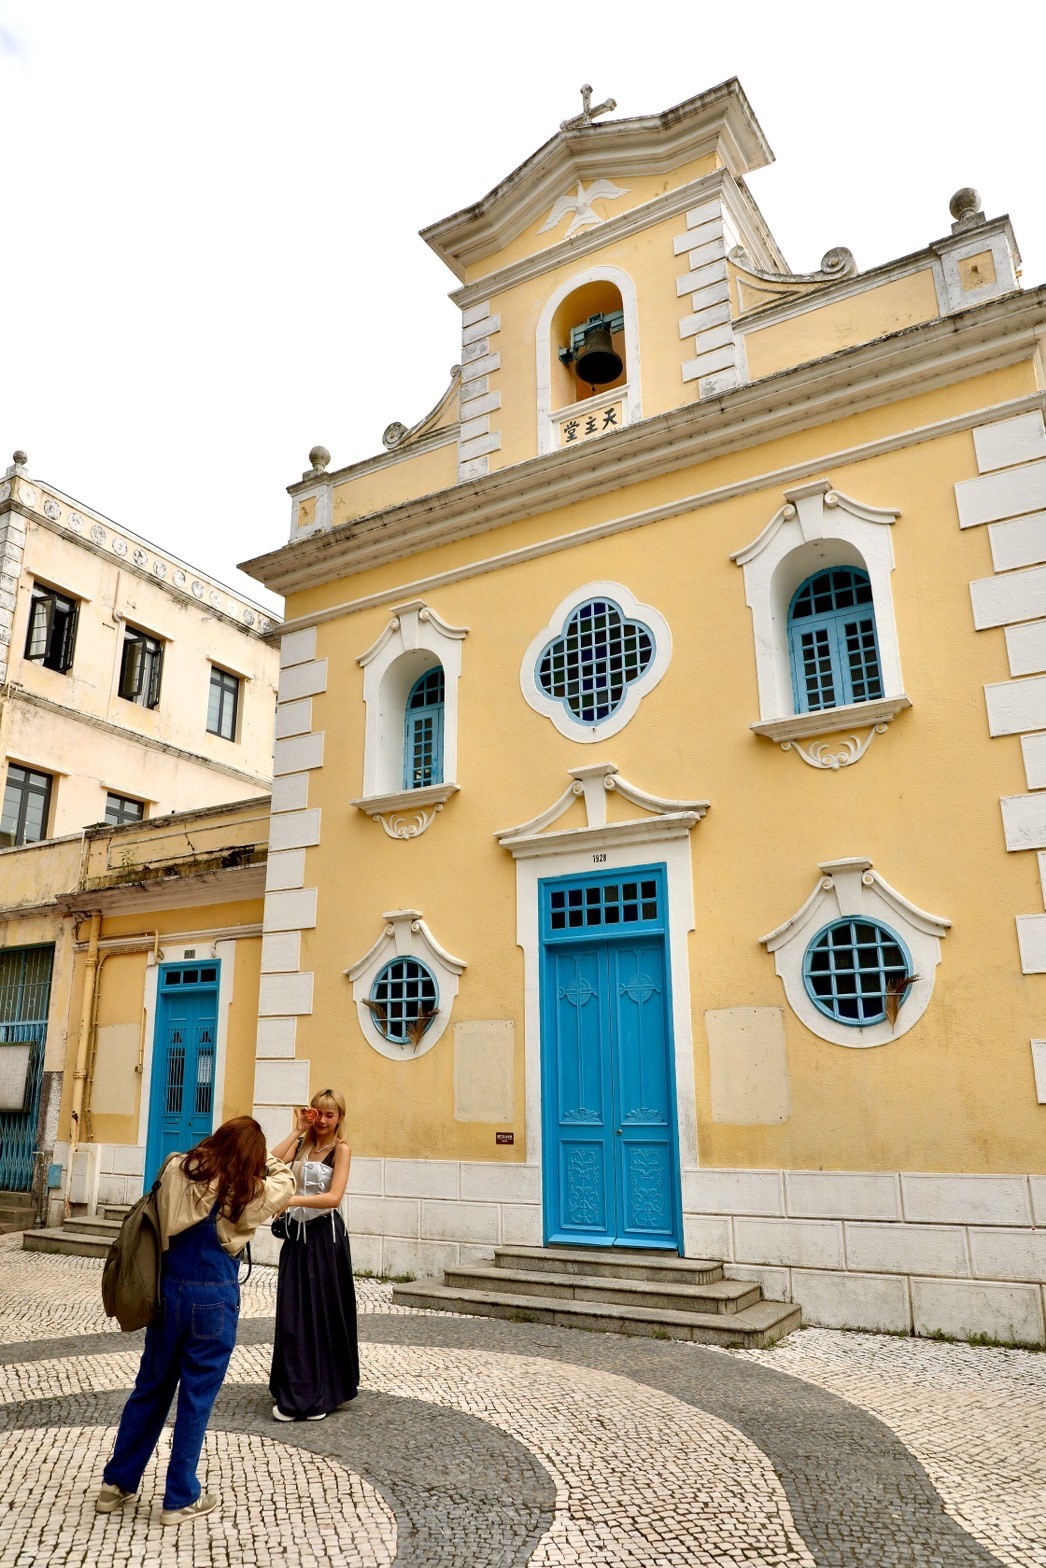 被稱為用盡澳門所有色彩的路環，有座名為「路環聖方濟各聖堂」的教堂，可愛的鵝黃、藍配色是最棒的街道攝影角落。